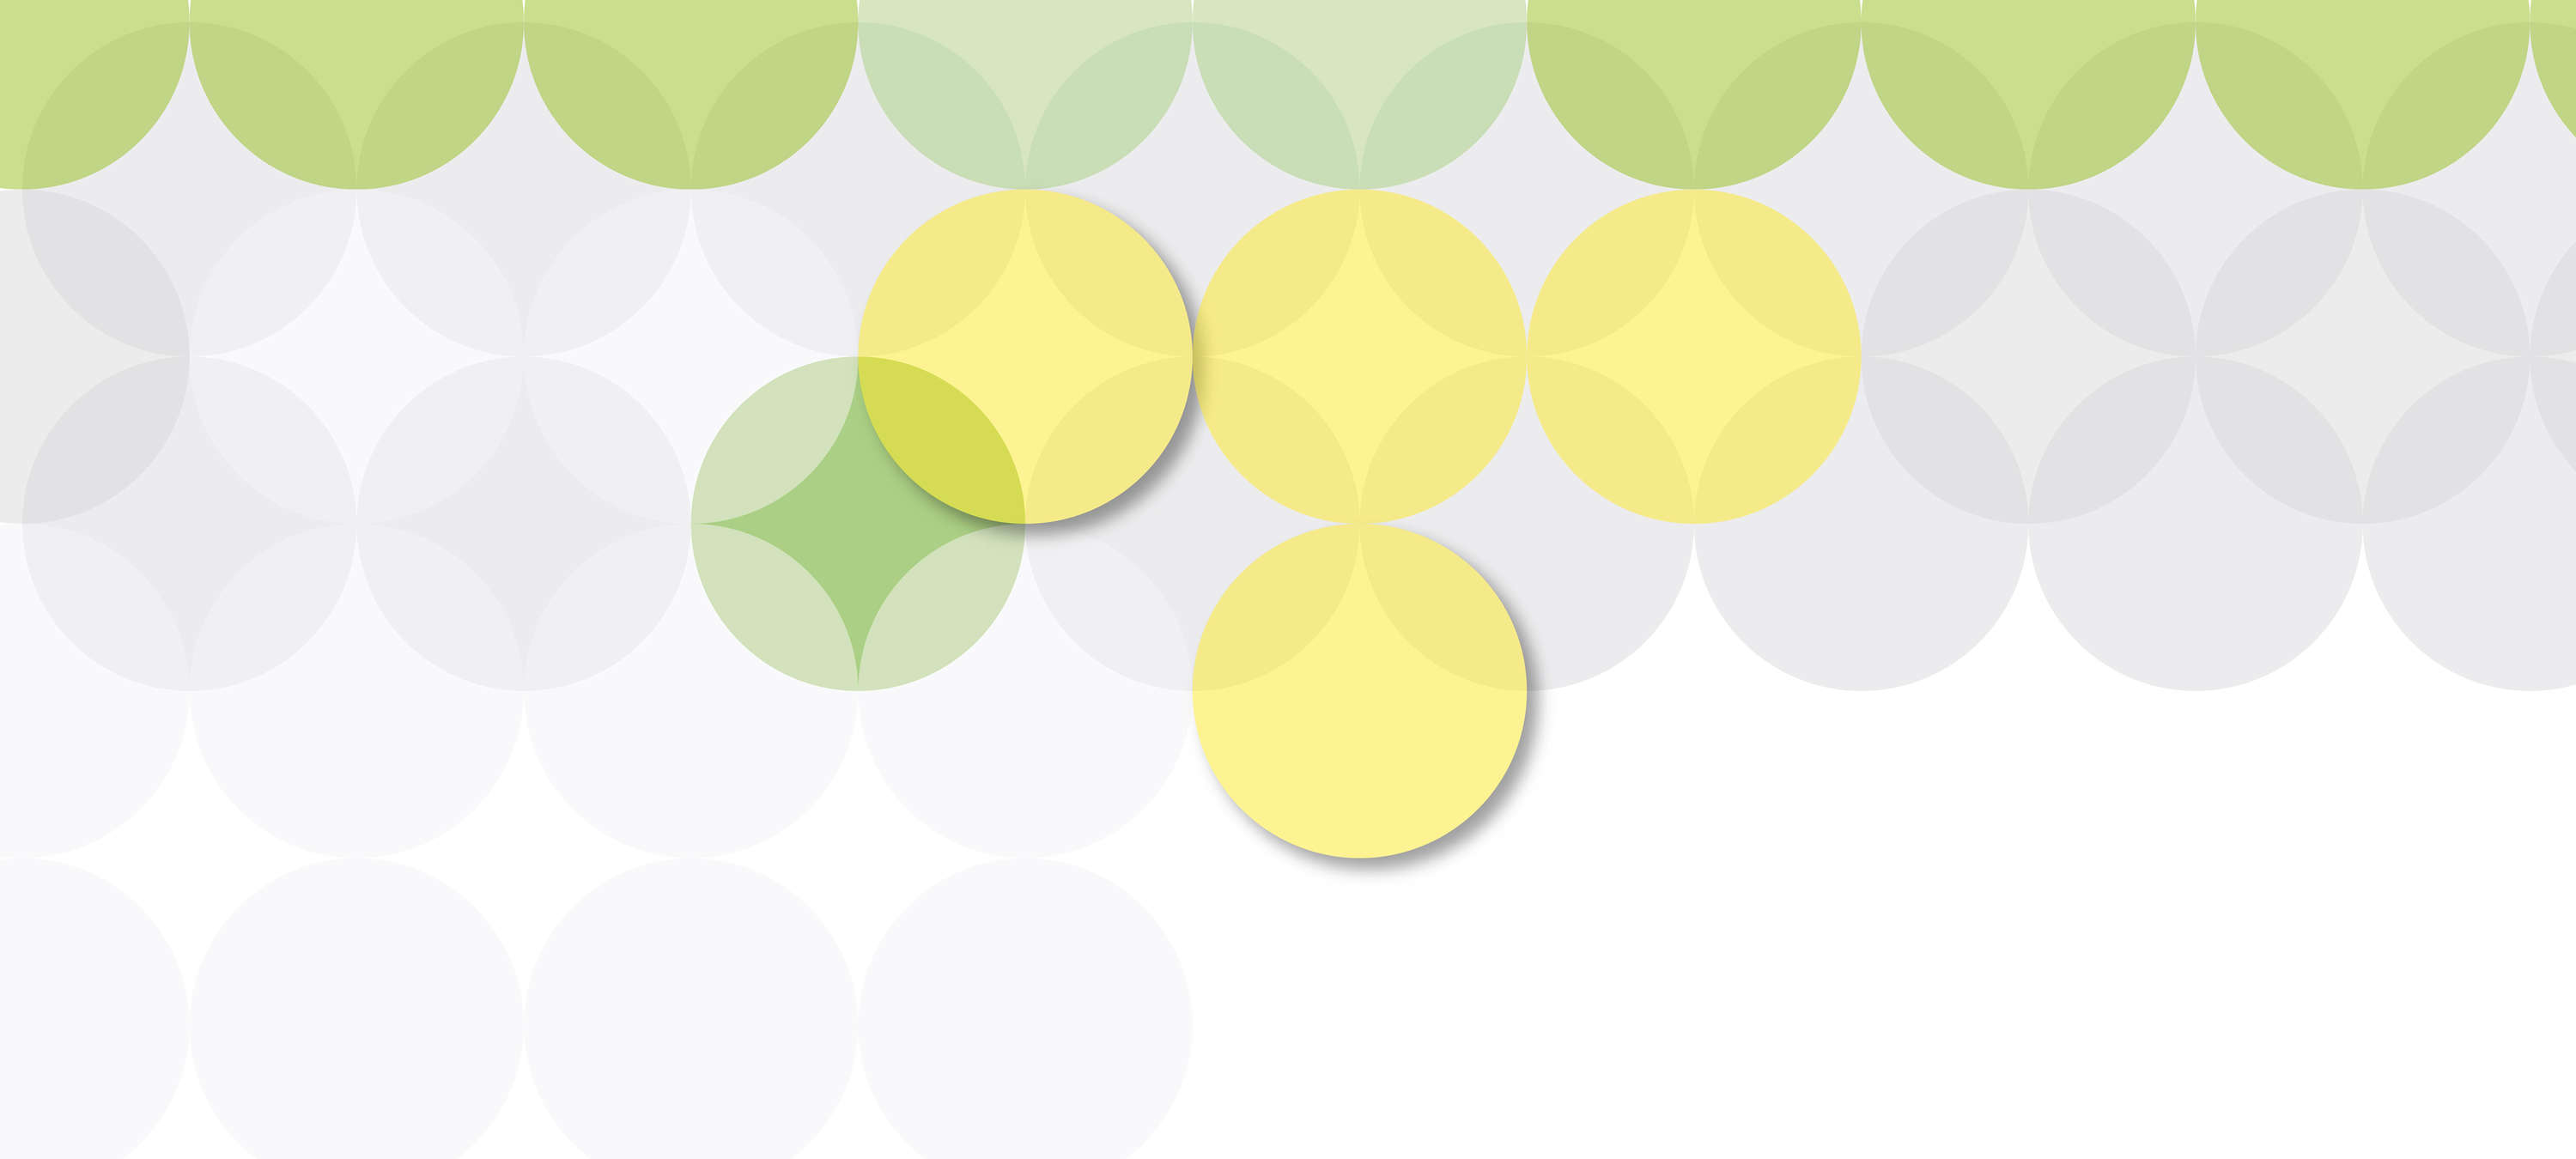             Circle Design & Grafisch Patroon Behang - Geel, Groen, Wit
        